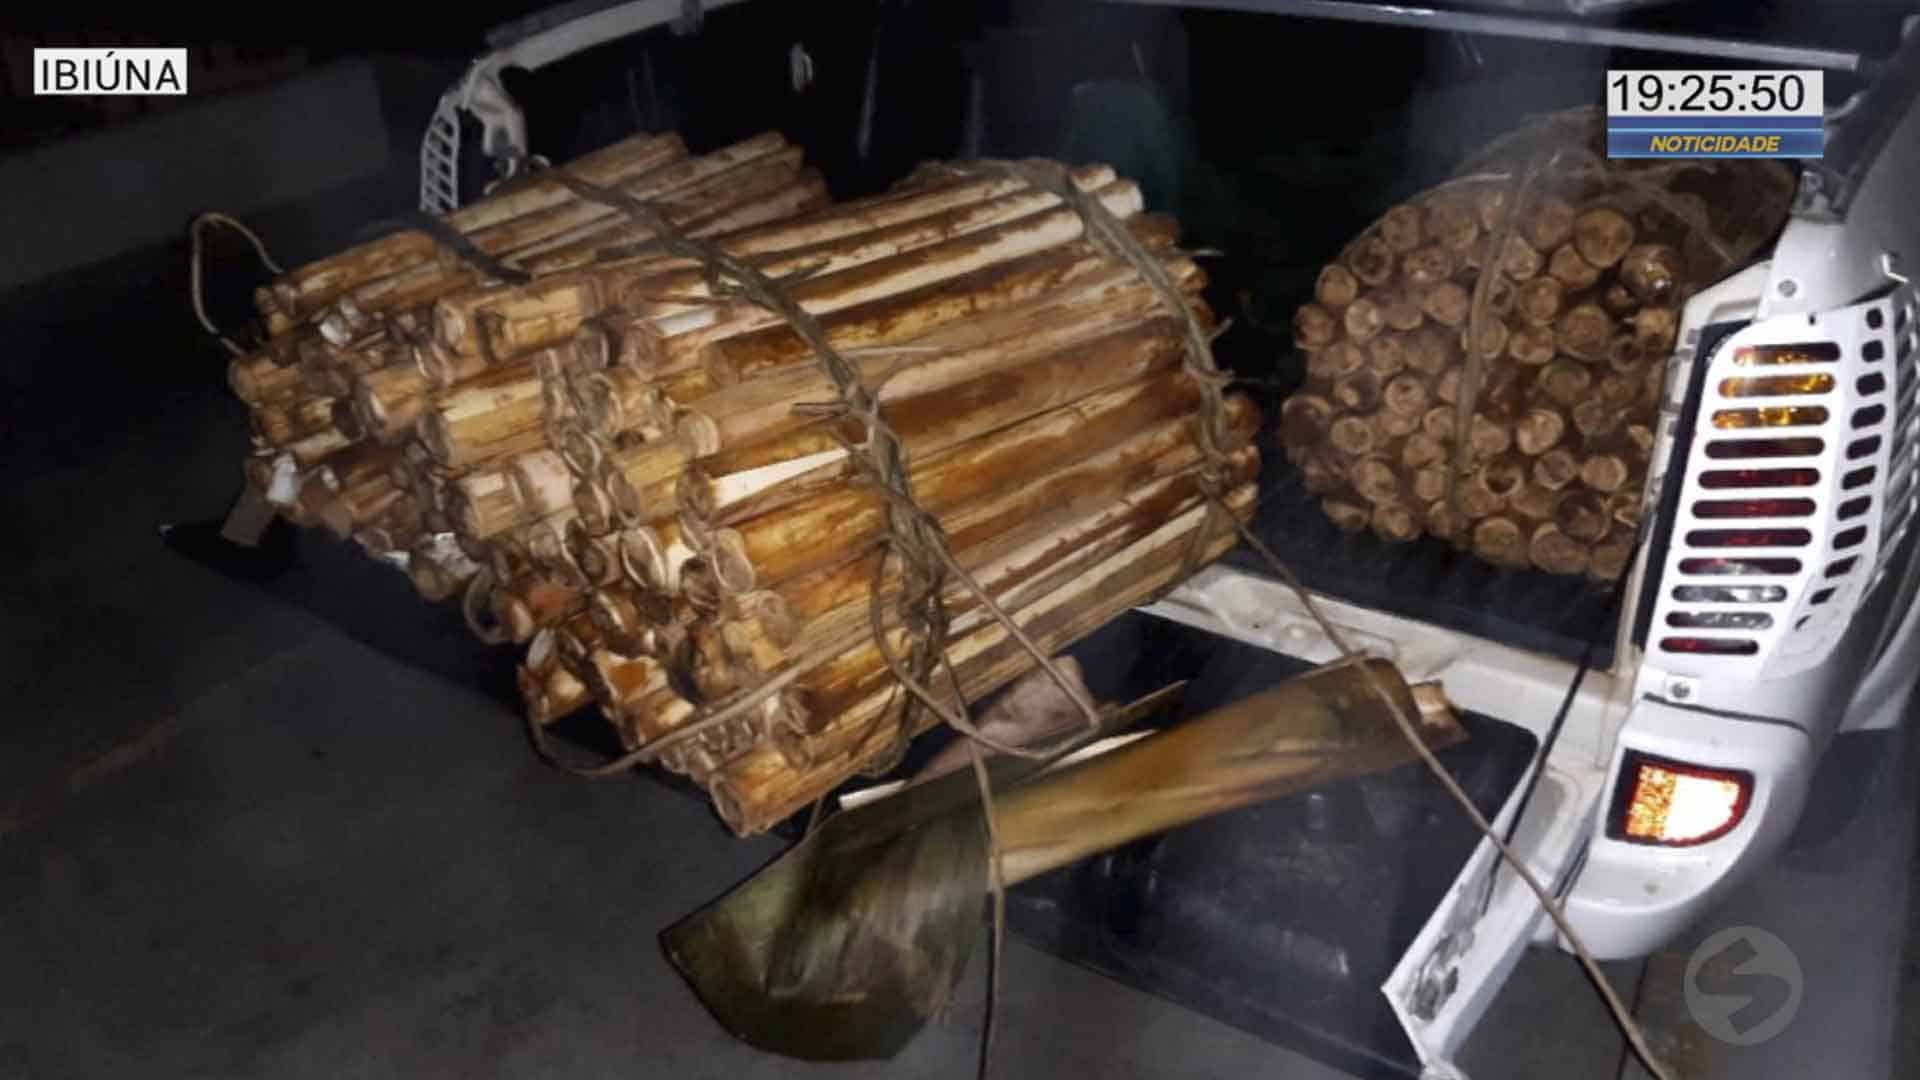 Quatro detidos em Ibiúna por extração ilegal de palmito